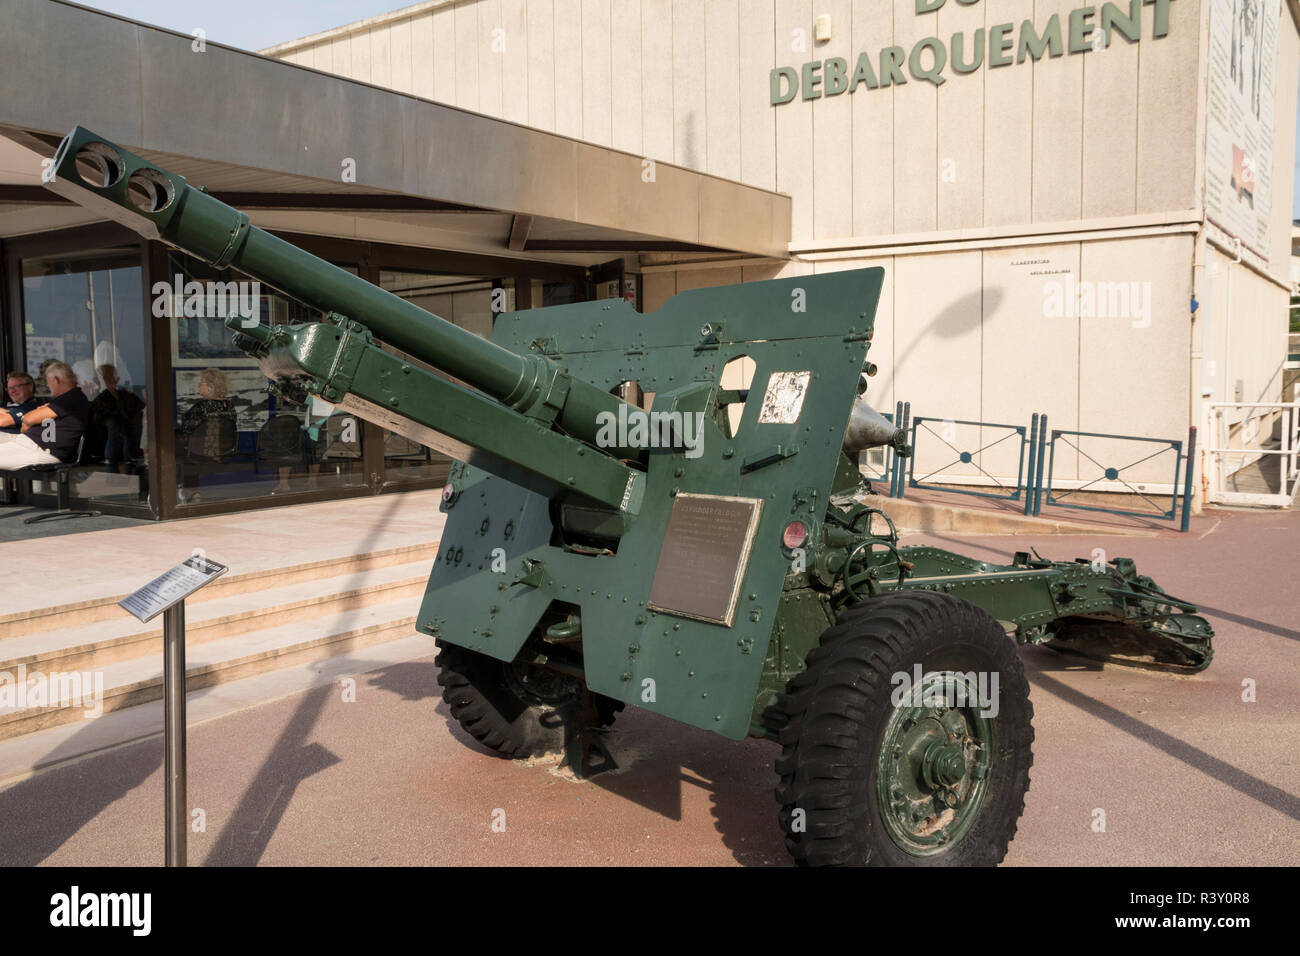 British Army medium field gun 25 lb, outside museum de debarquement, Arromanches. Stock Photo